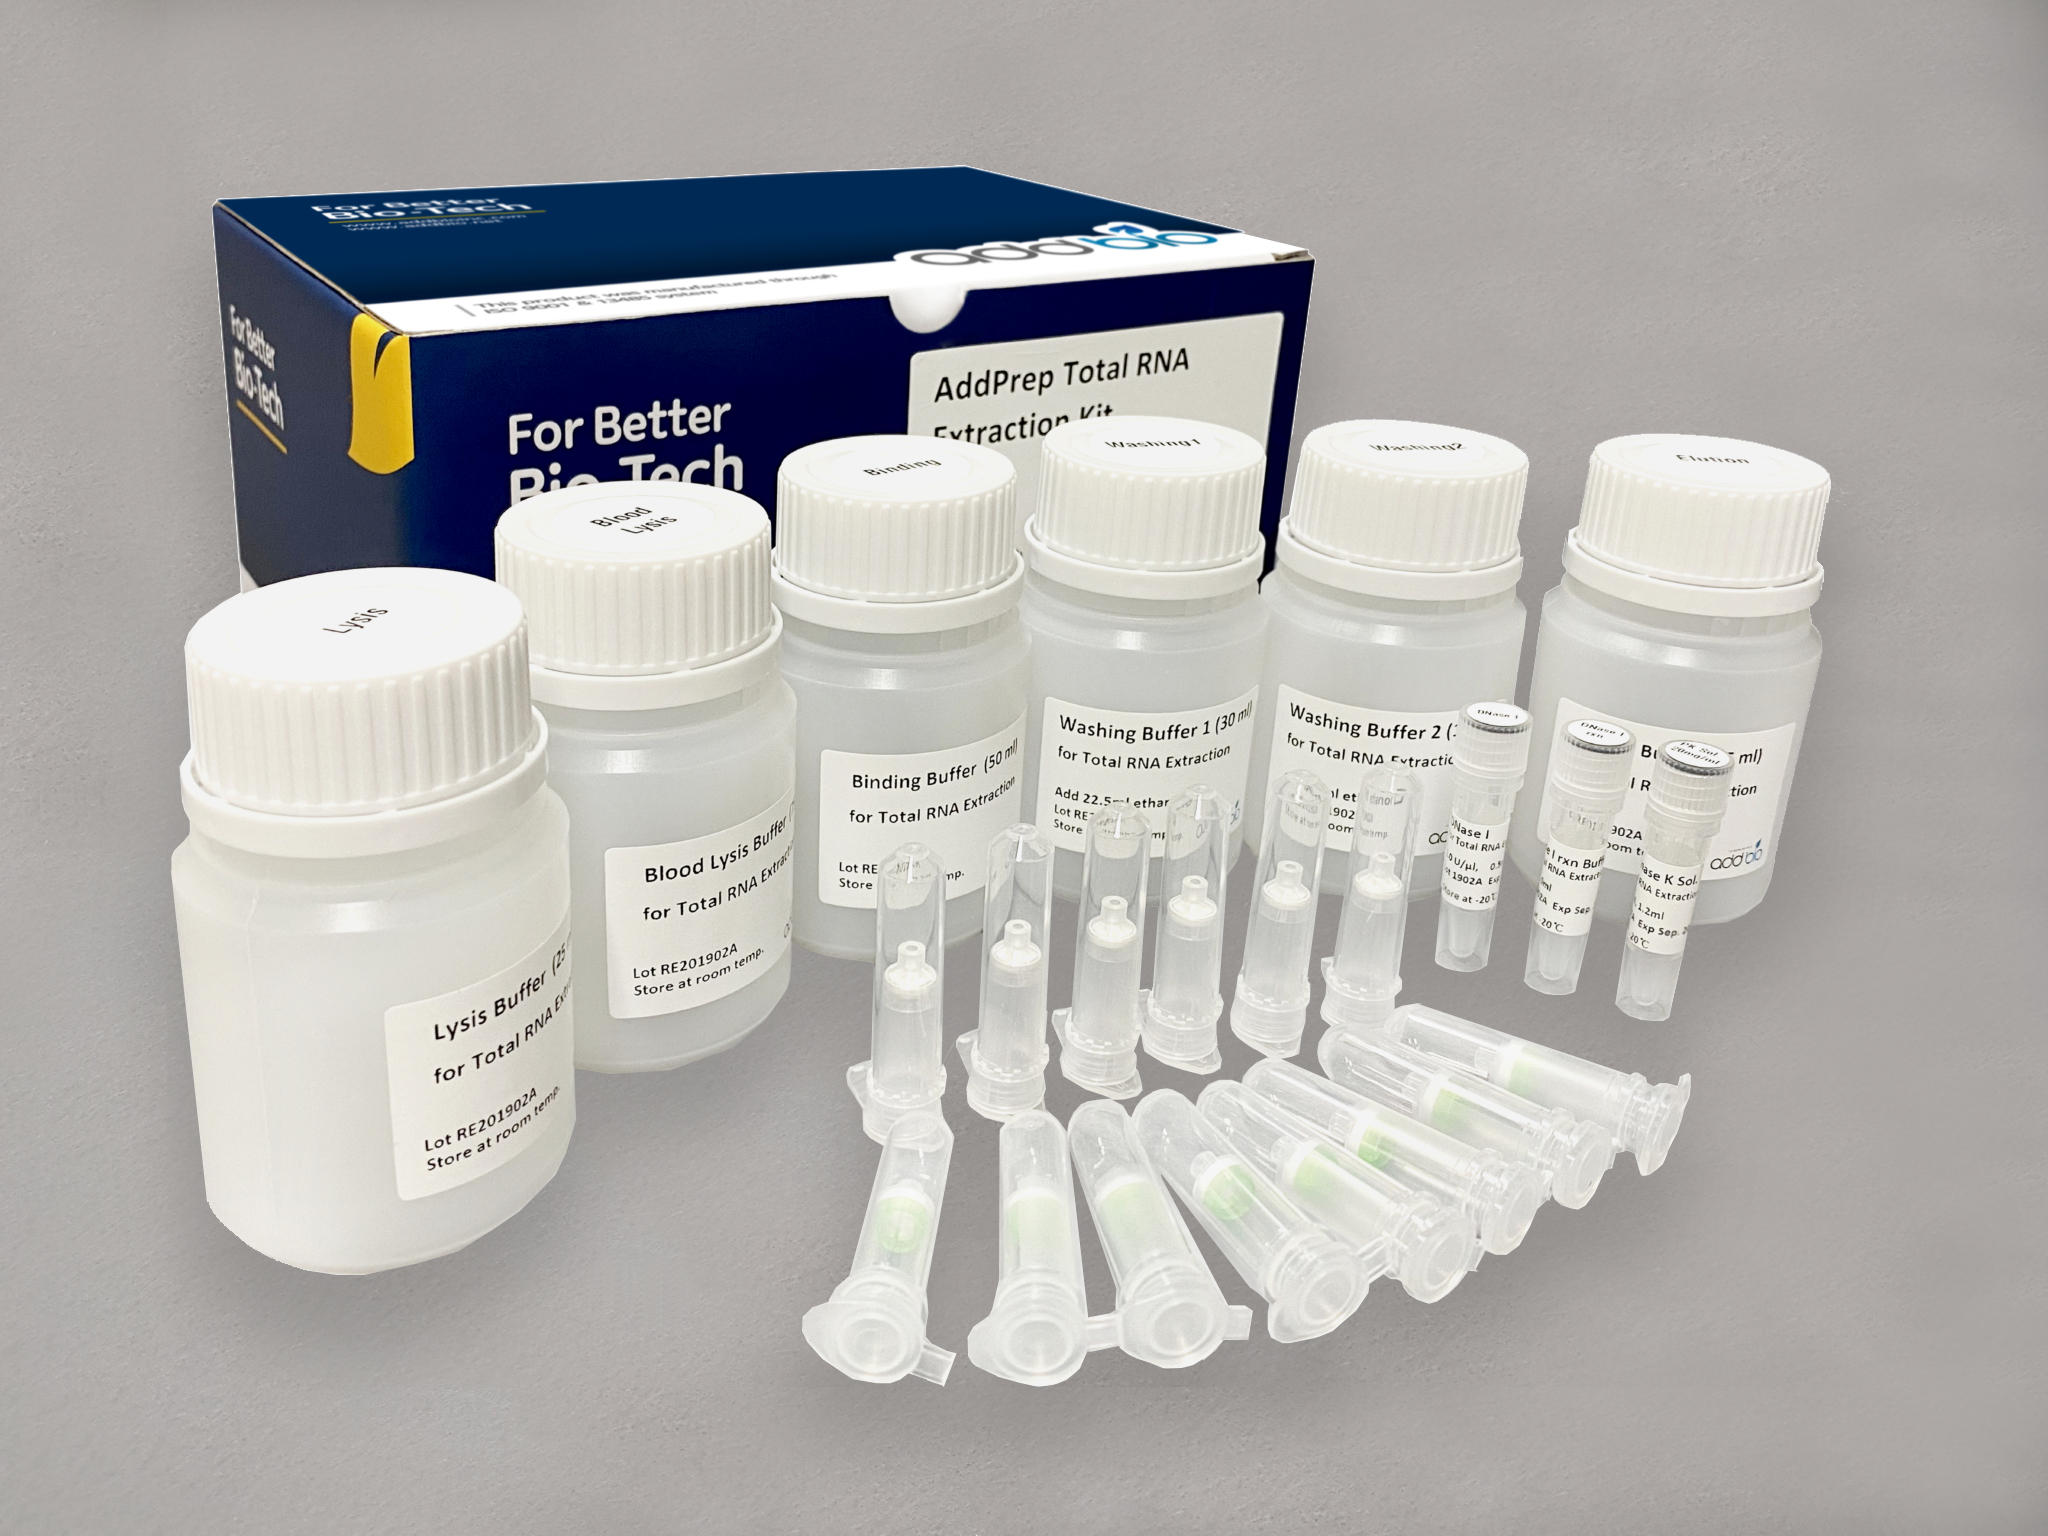 کیت استخراج RNA Total (Addbio) - شرکت درمان نگار آیندگان